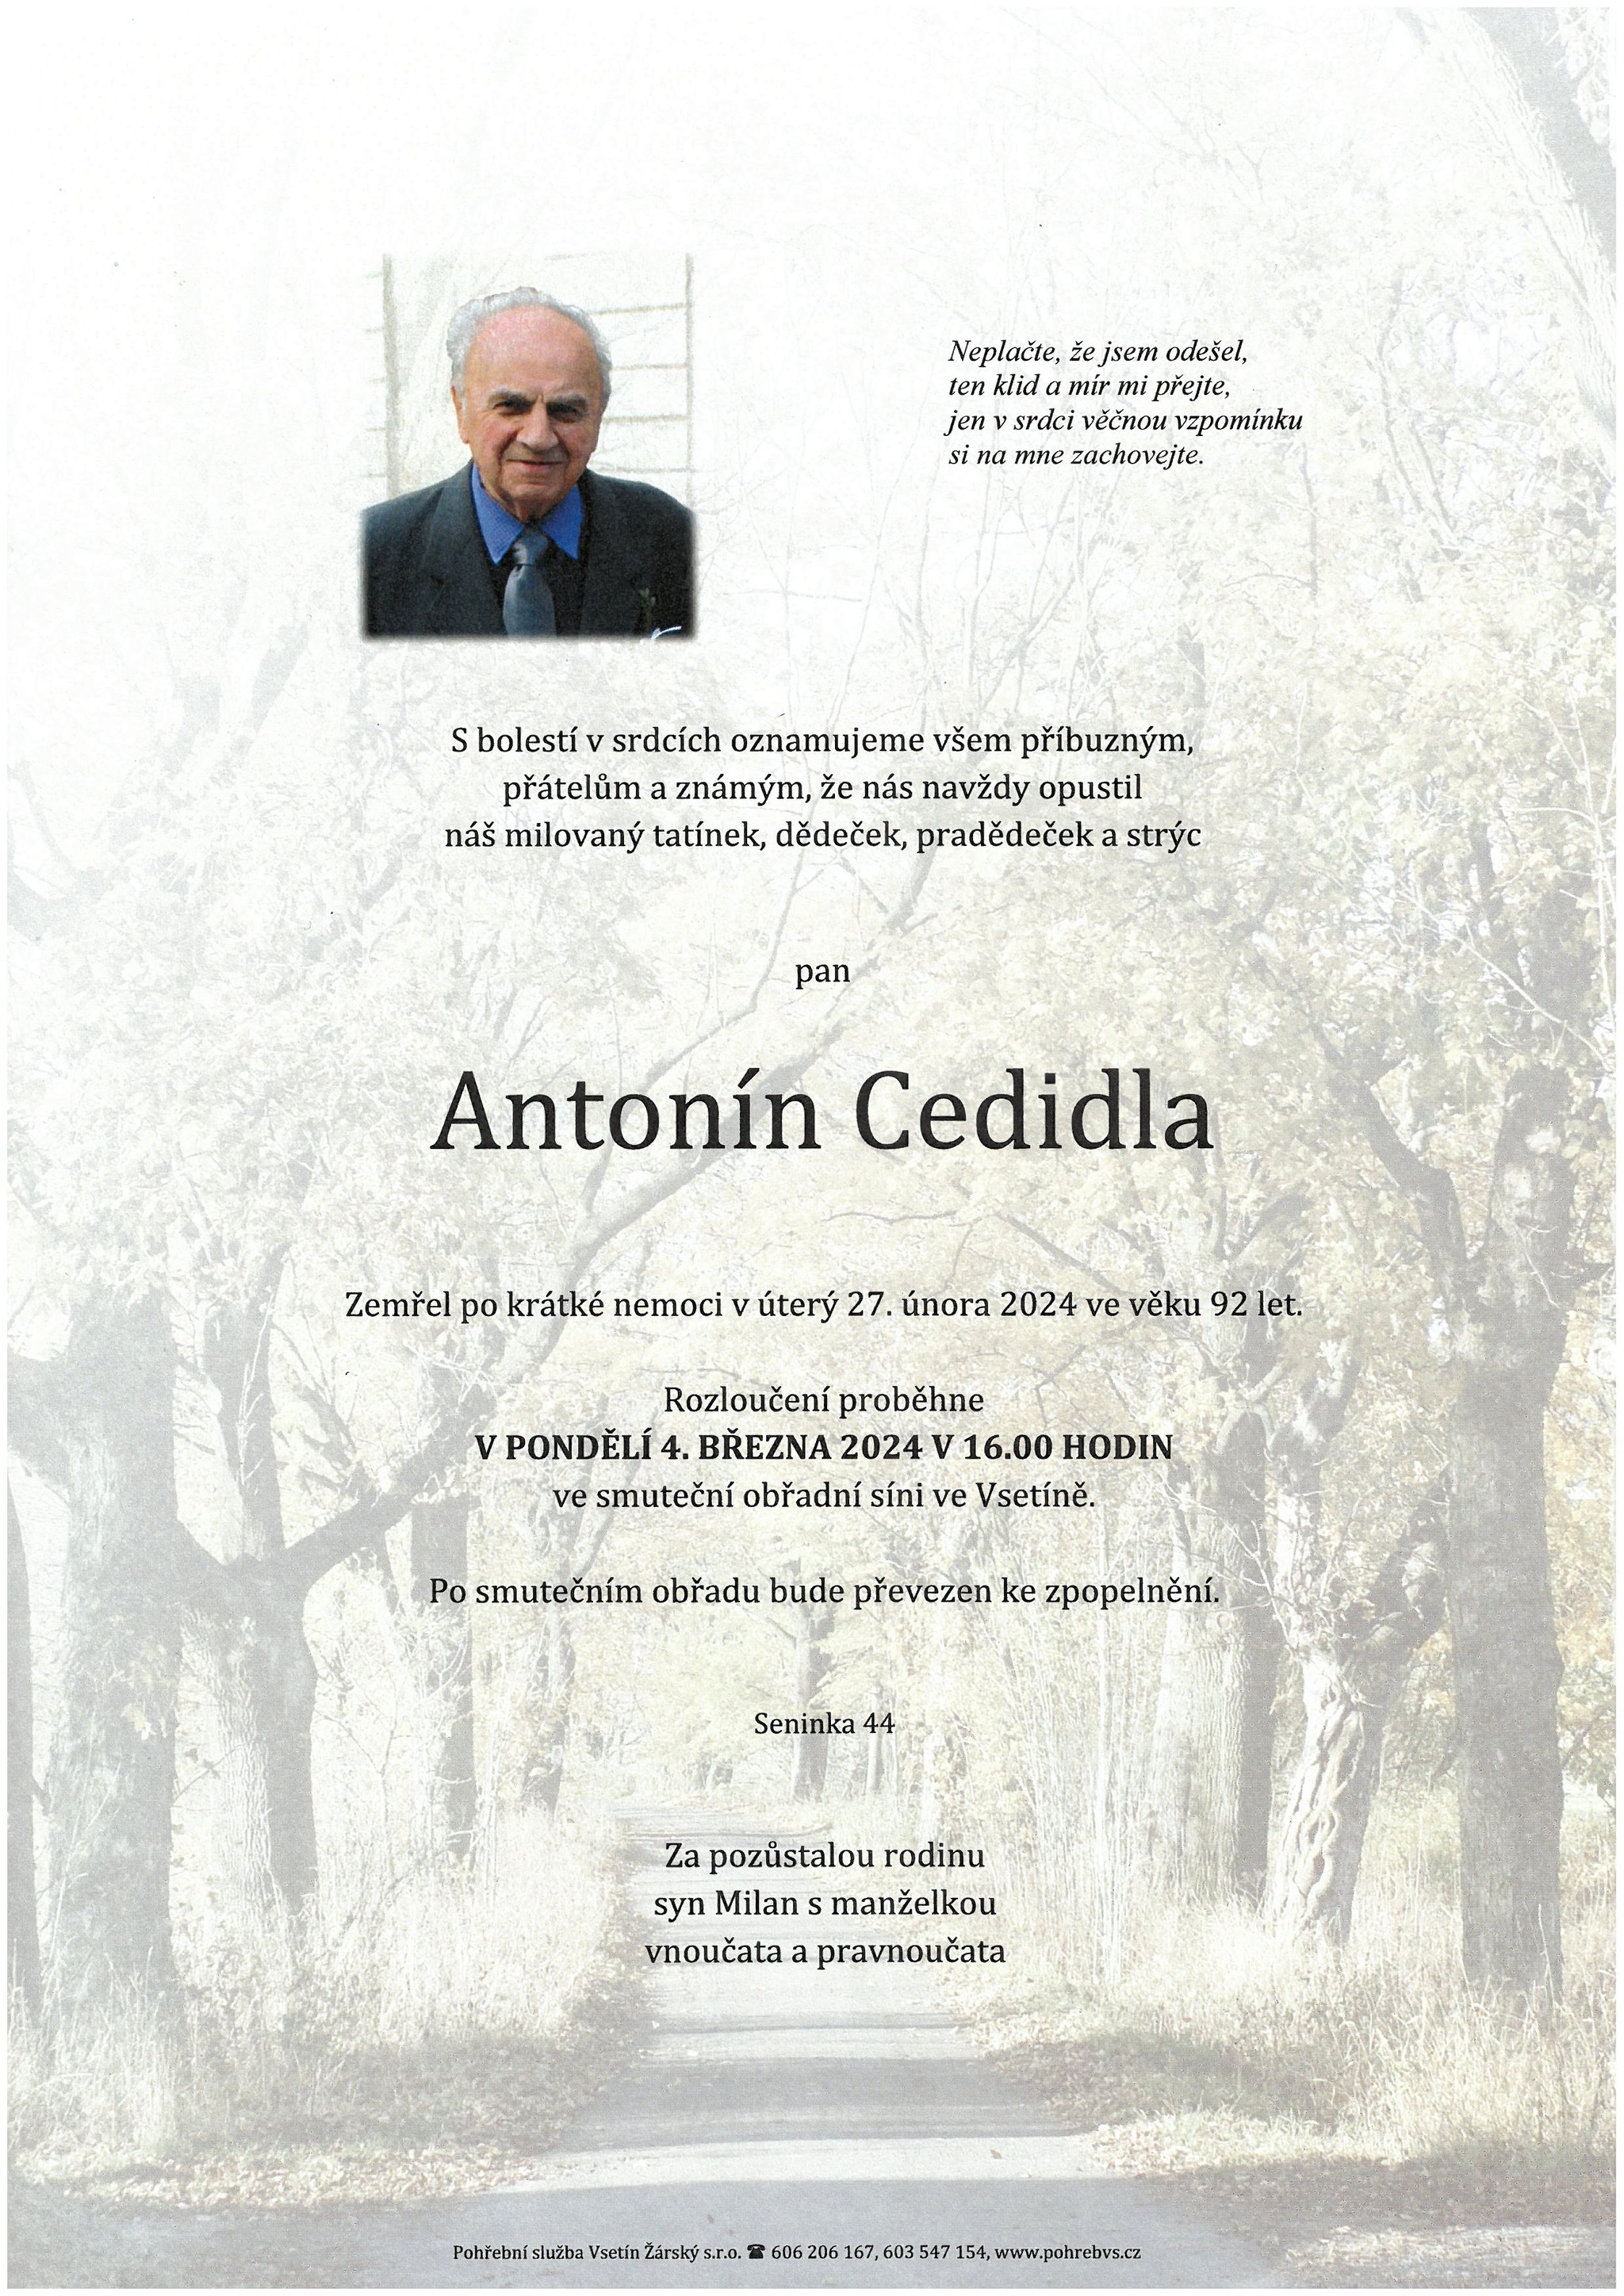 Antonín Cedidla